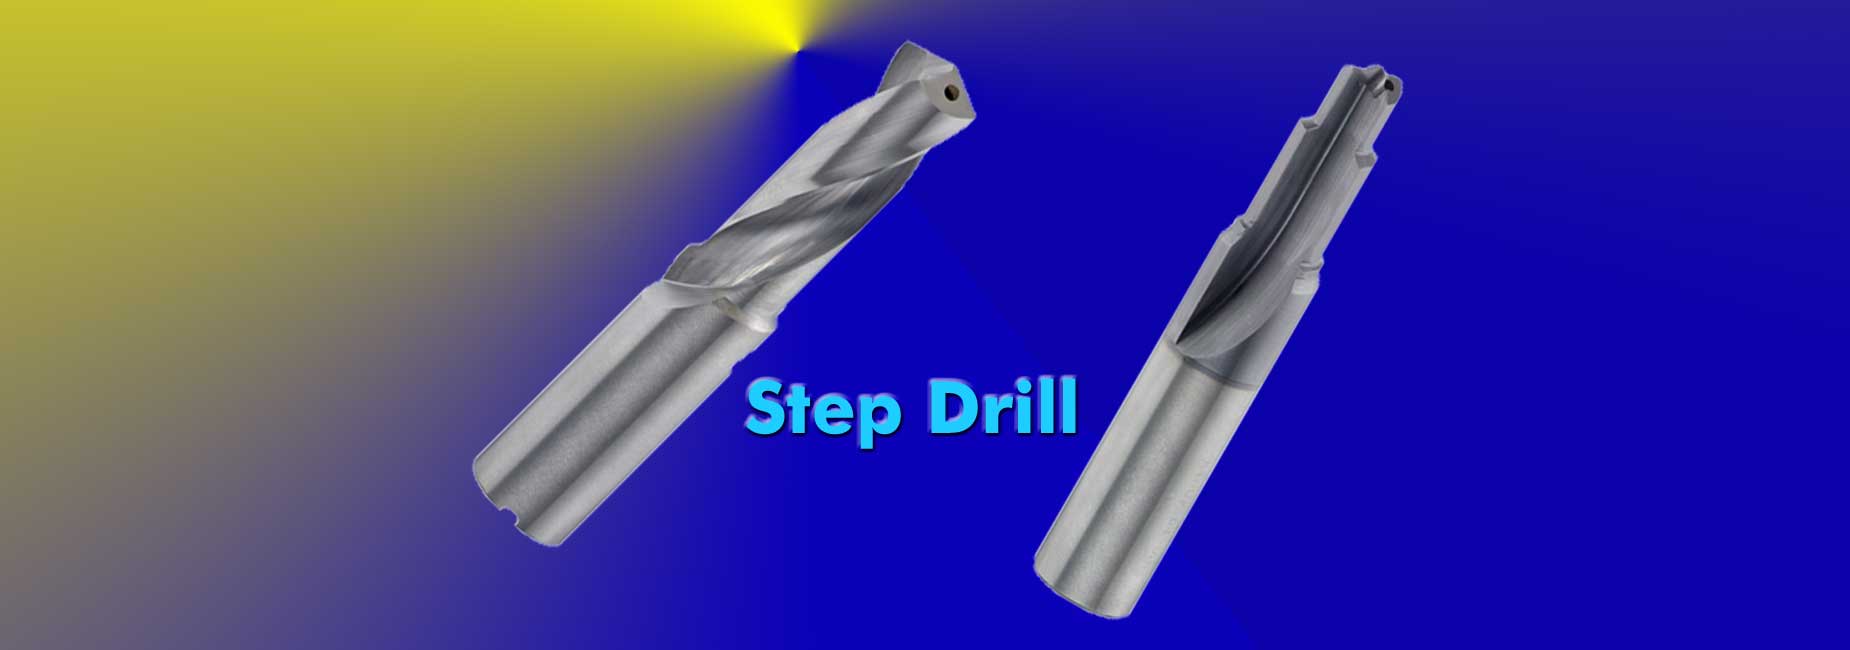 Step Drill 1850x650px